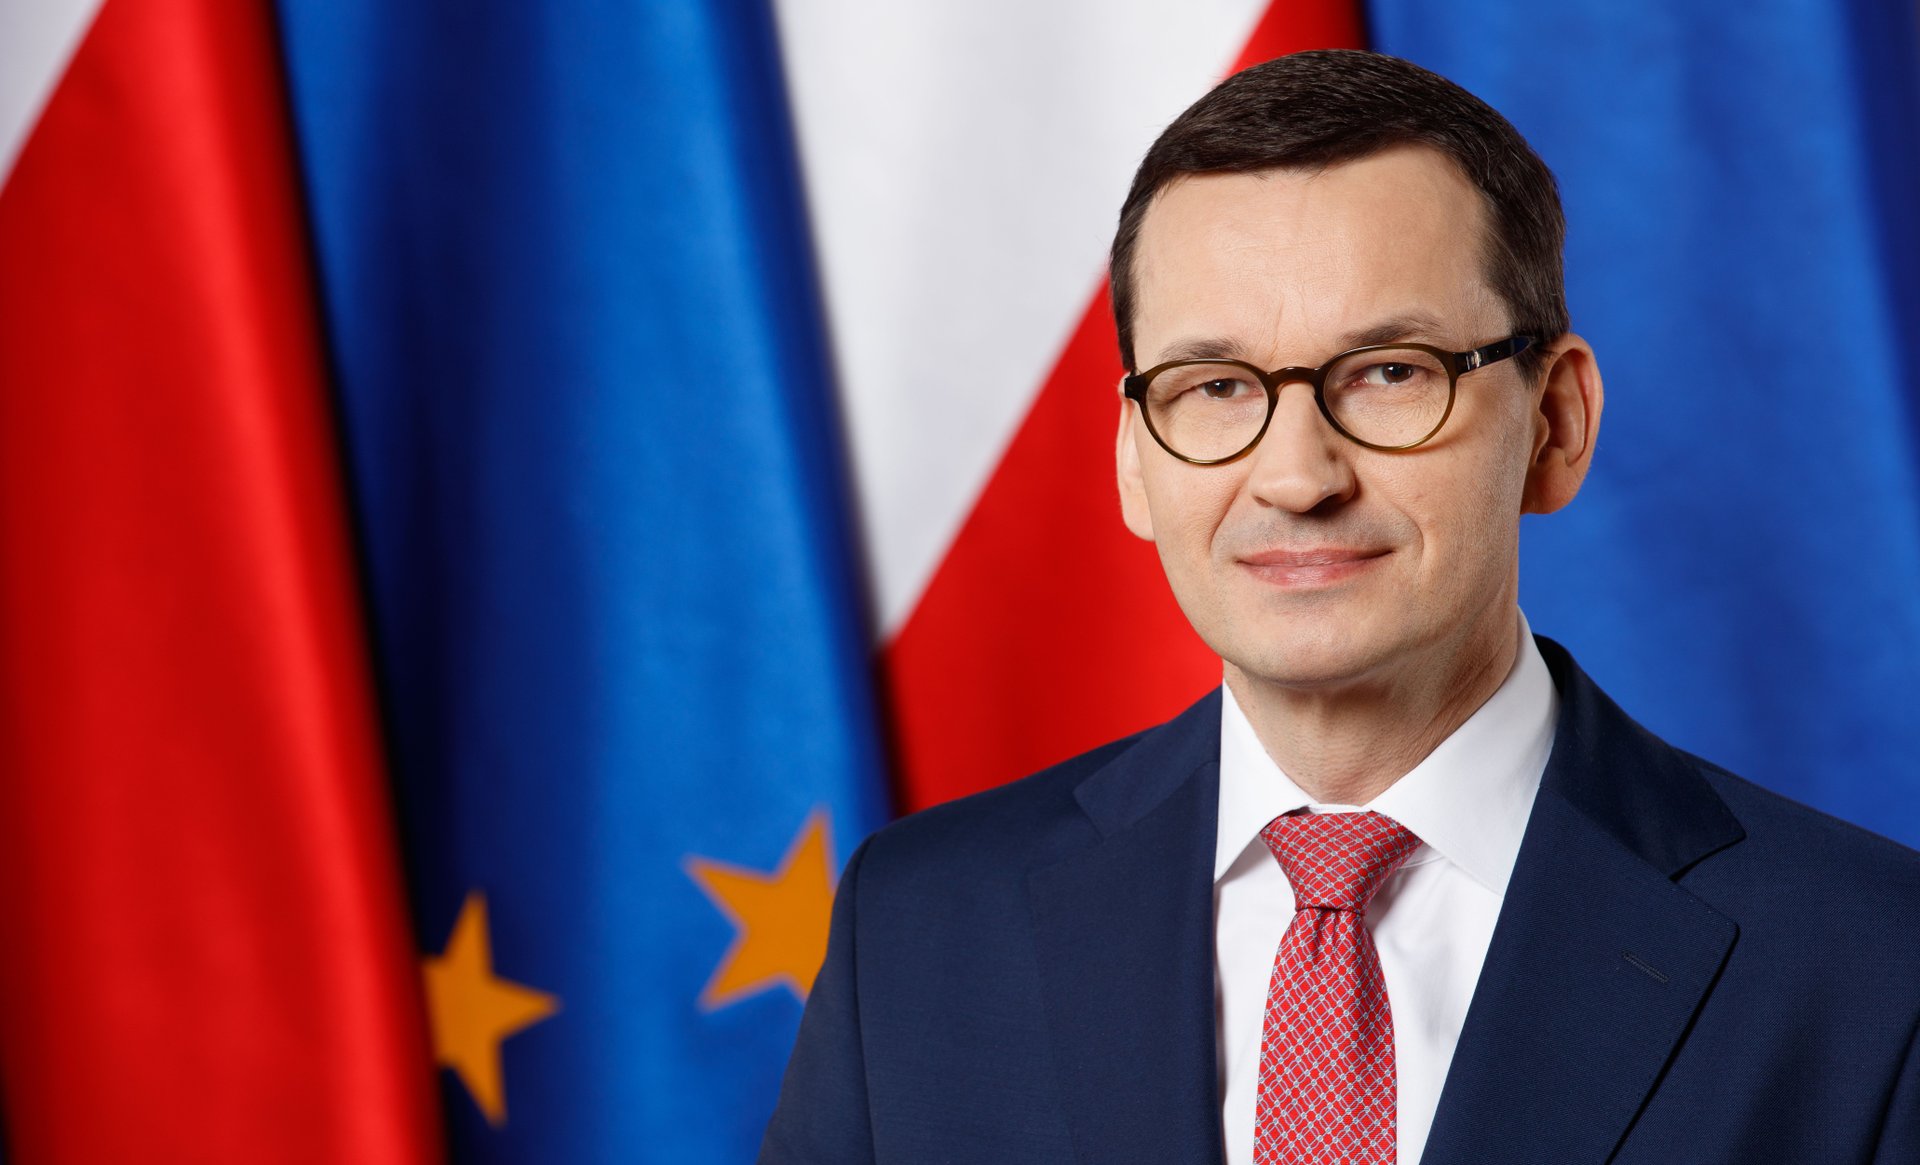 Jak podaje "Rzeczpospolita" Komisja Europejska zamierza zamrozić niemal wszystkie pieniądze przysługujące Polsce.